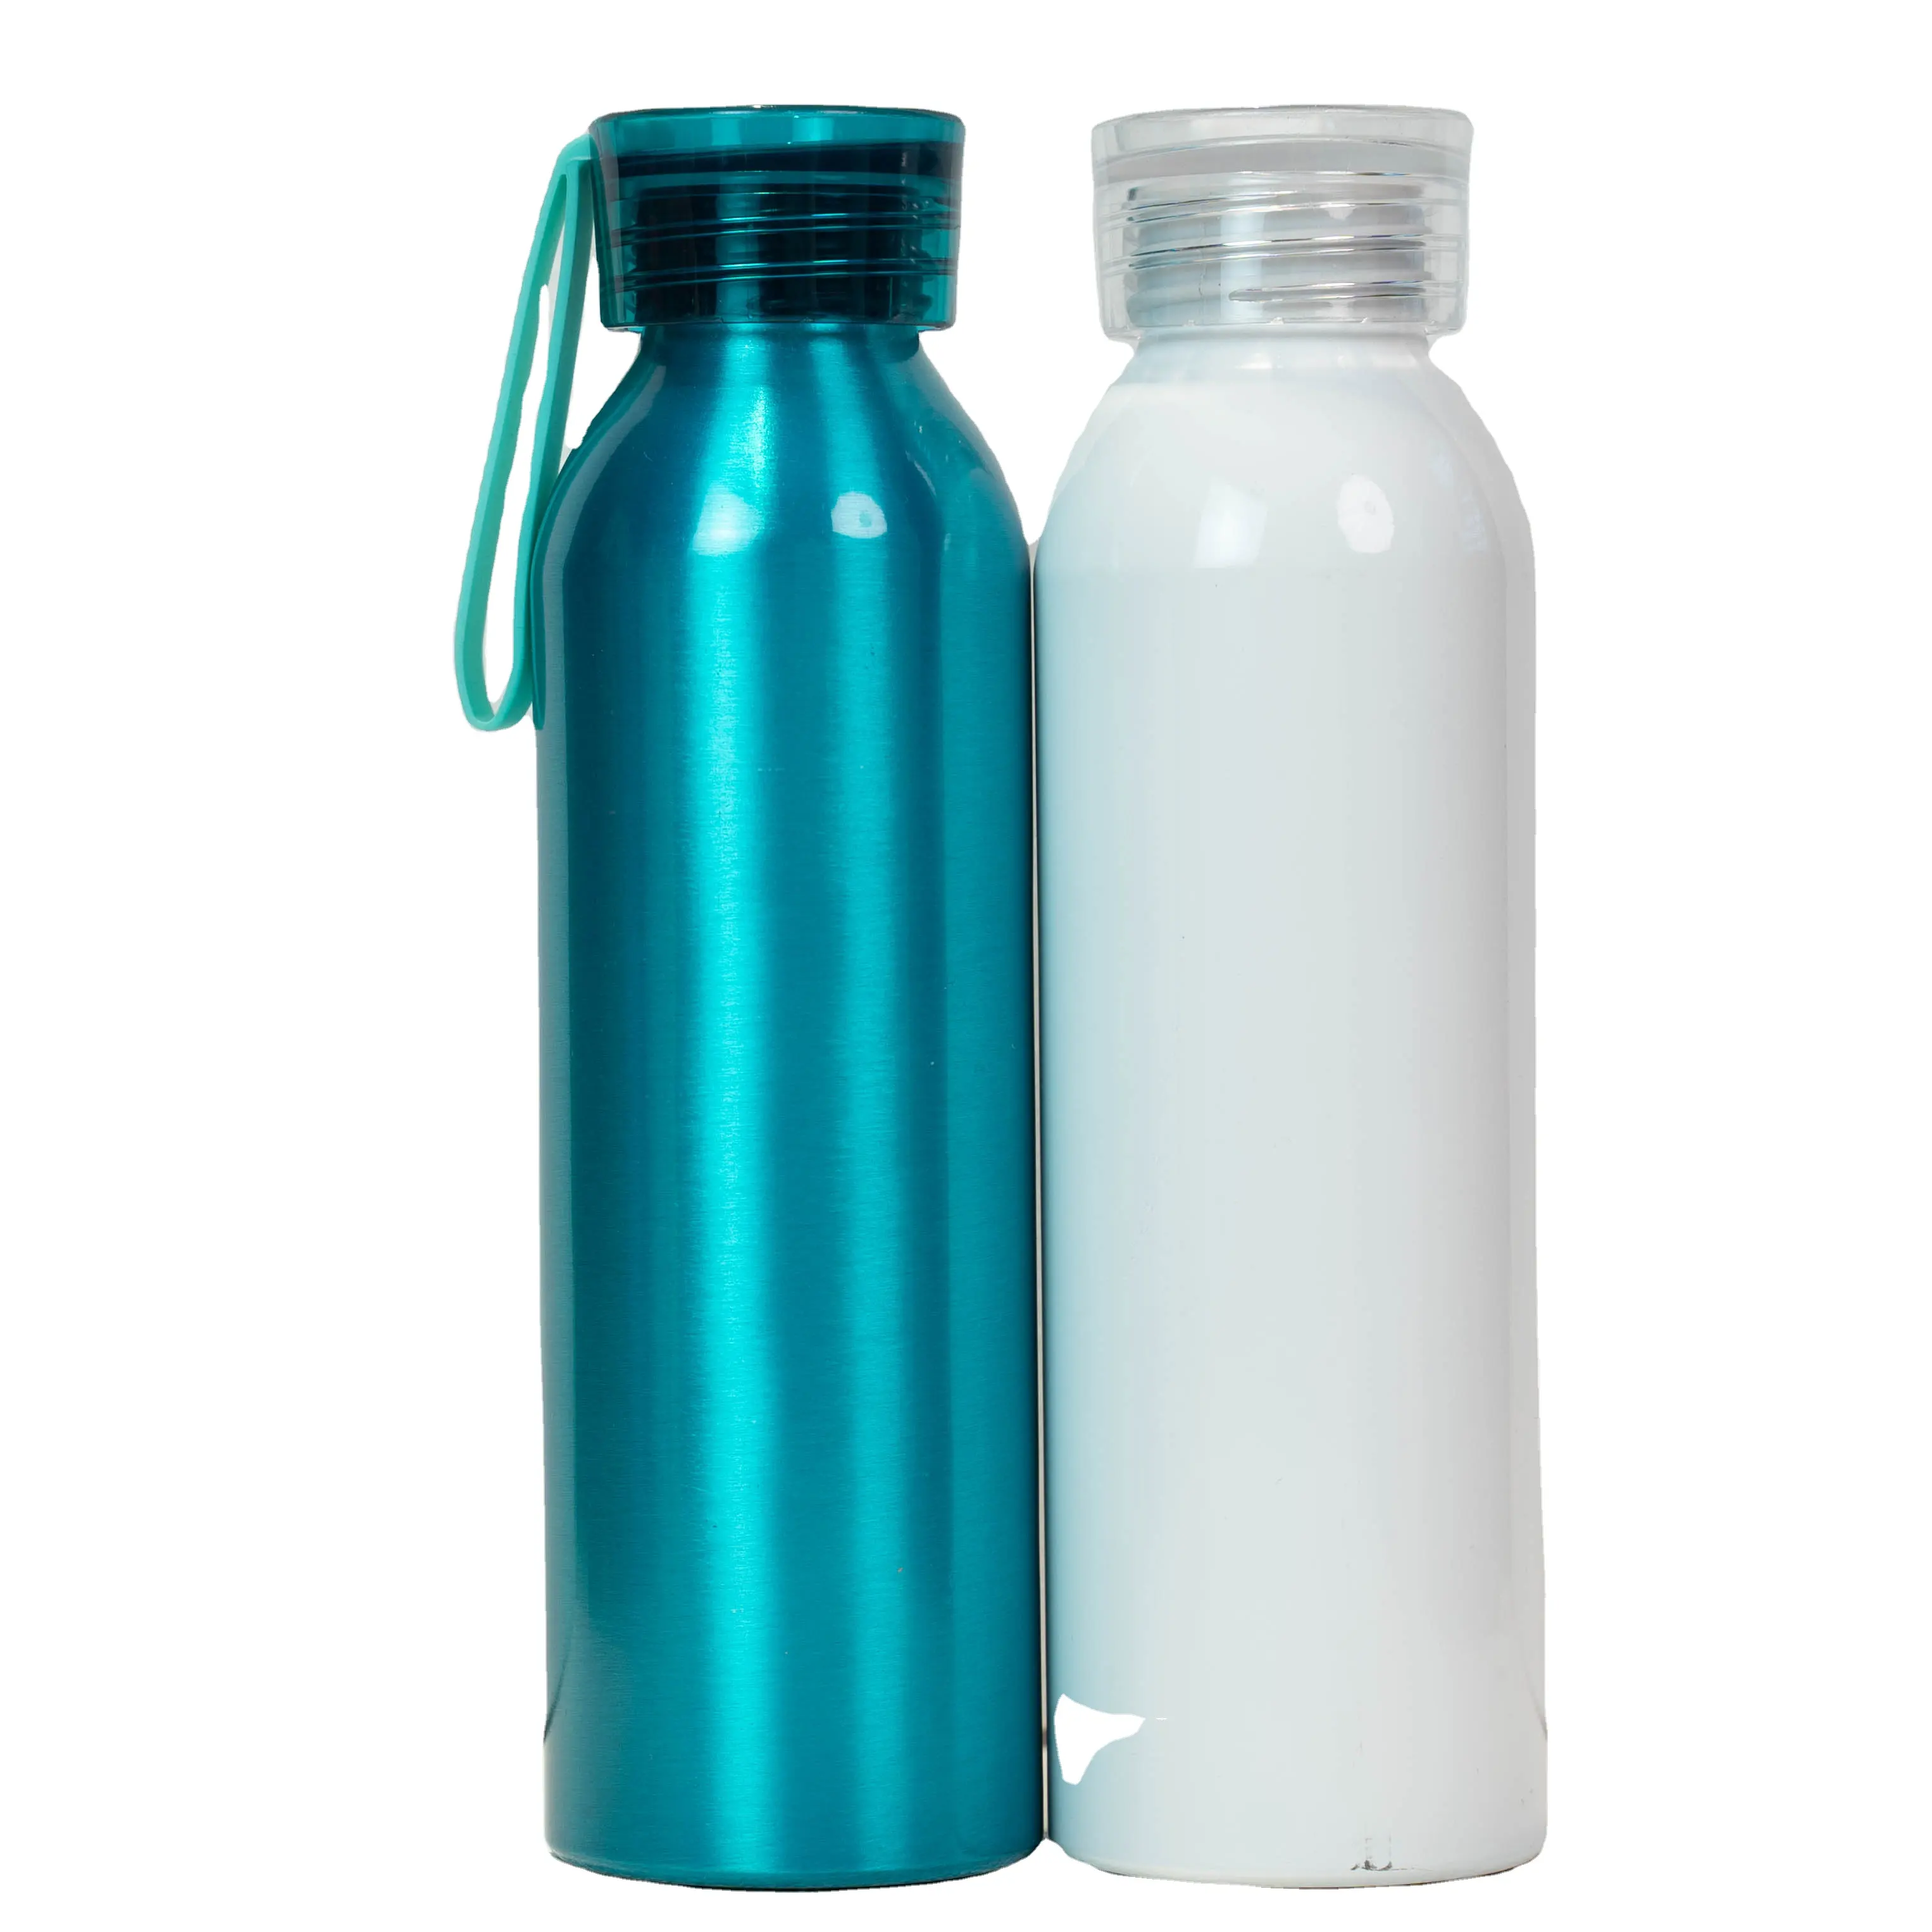 زجاجة مياه ساخنة من الألومنيوم 750 مل للبيع بالجملة للاستخدام في التخييم الخارجي مزودة بشريط